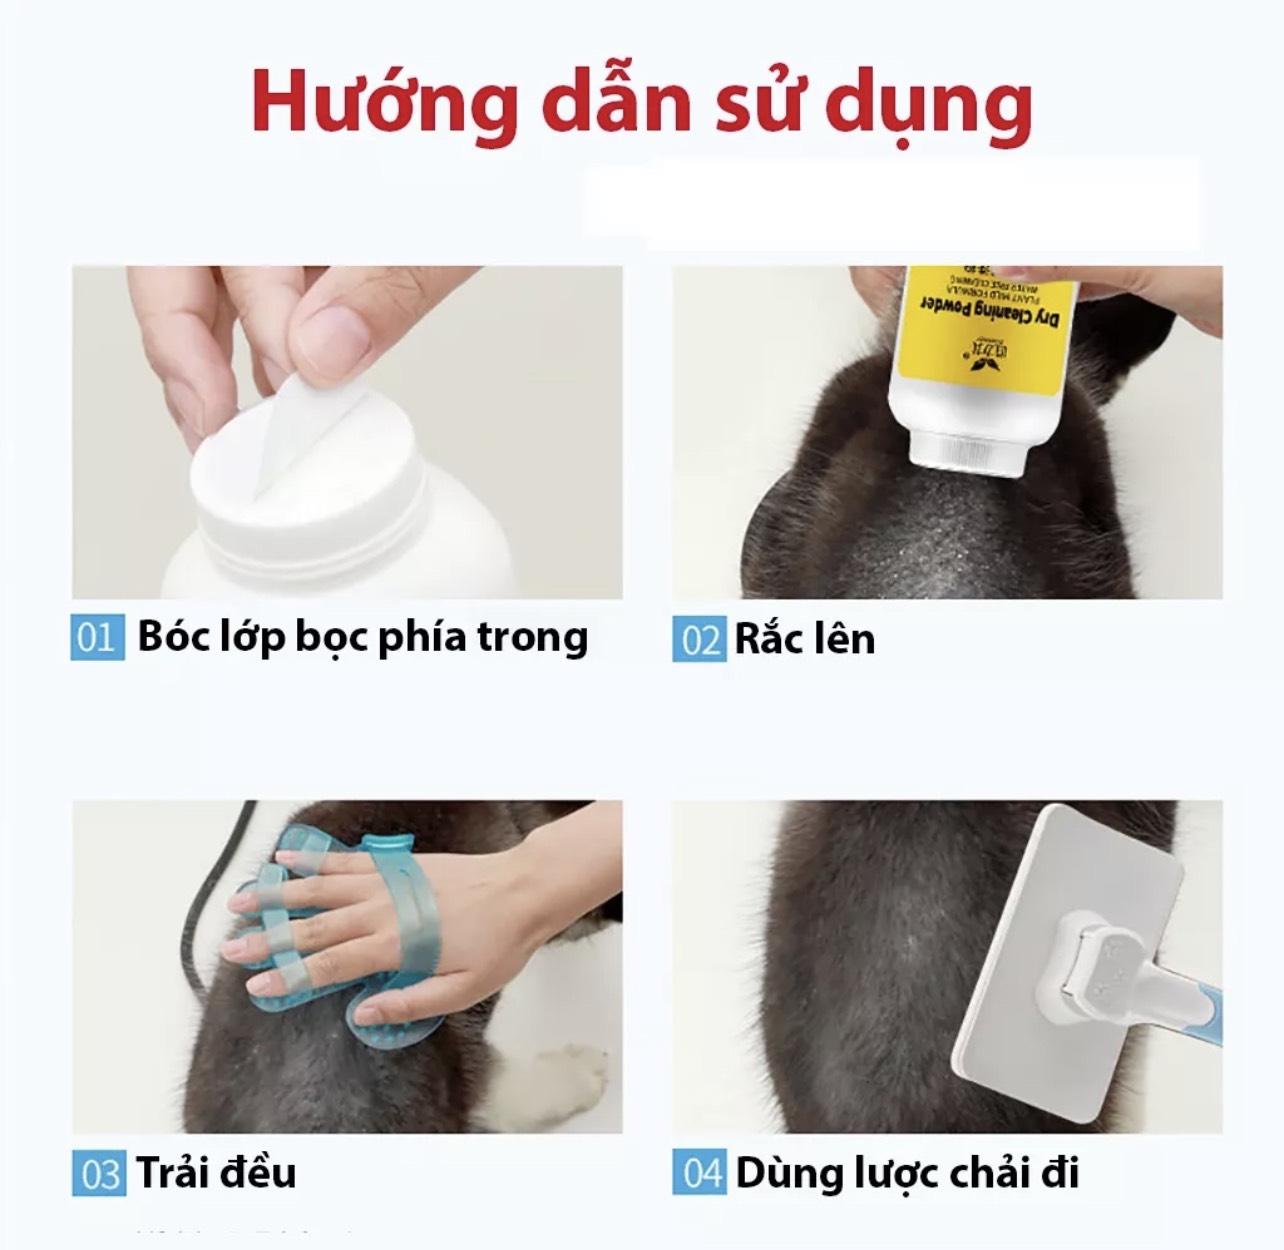 [MẪU MỚI VỀ]  Sữa tắm bột tắm khô cho chó mèo DACOTE dùng một lần chống ve rận 260g